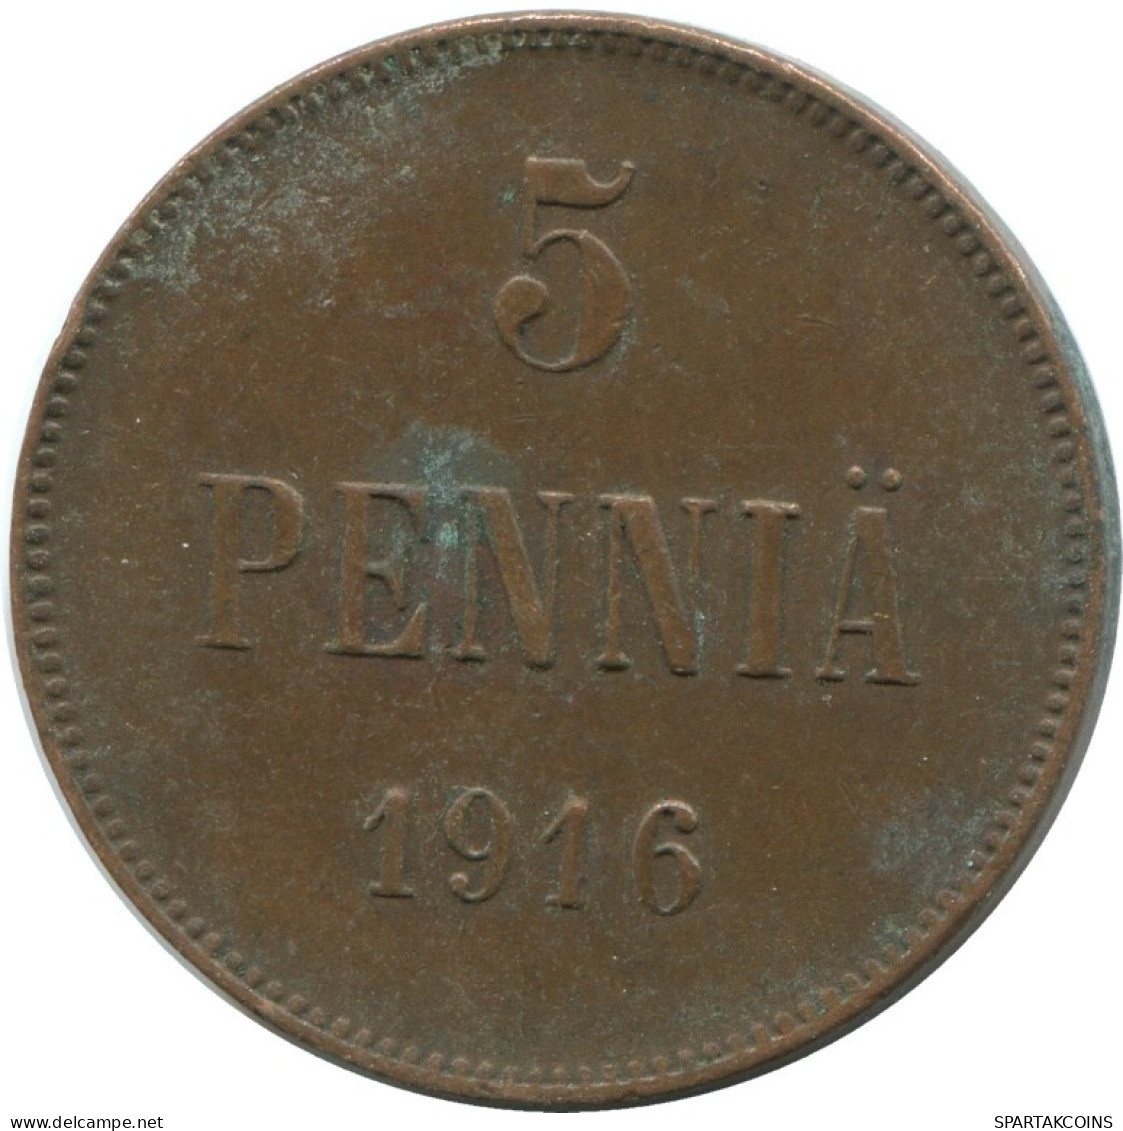 5 PENNIA 1916 FINLAND Coin RUSSIA EMPIRE #AB140.5.U.A - Finlande